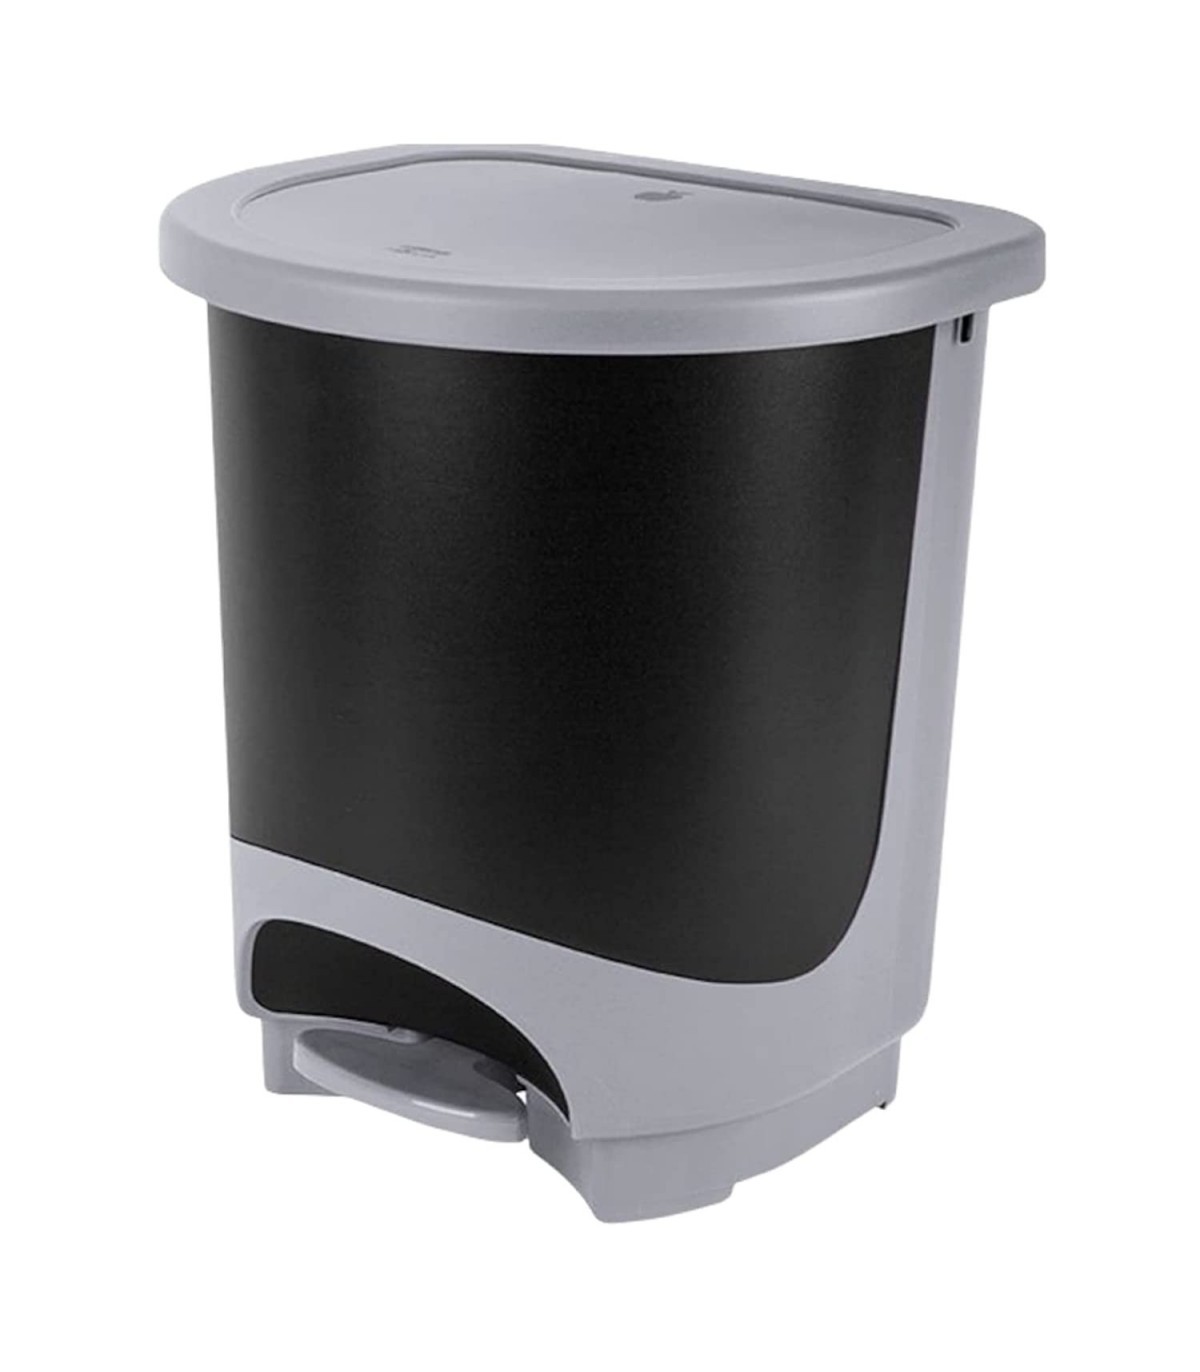 TIENDA EURASIA® Cubo de Basura para la Cocina Plata Cubo Basura con Pedal Capacidad para 30 Litros Material Plastico Resistente Variedad de Colores